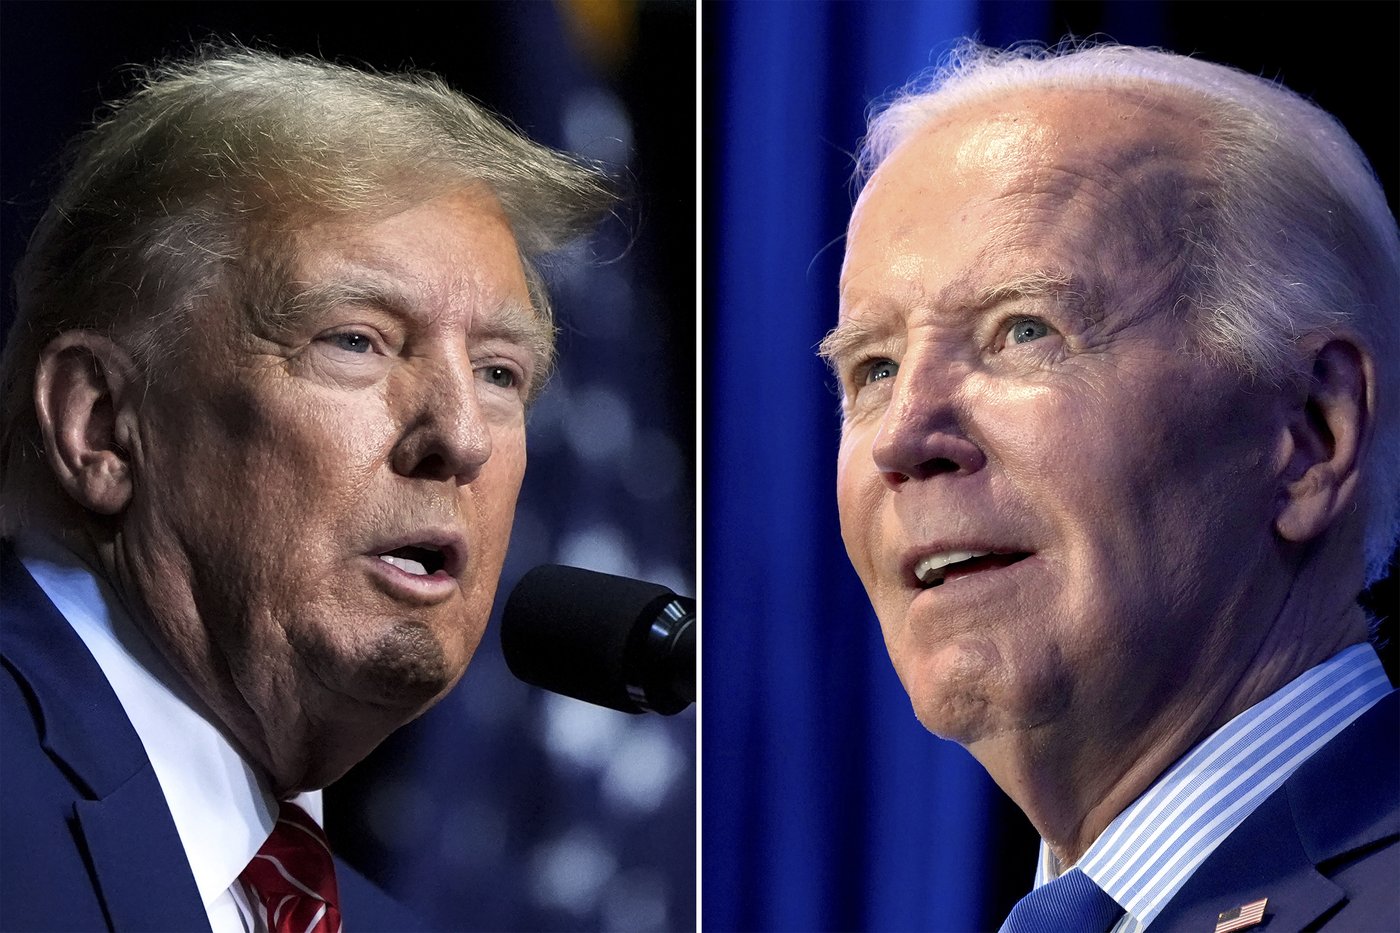 Un match de revanche entre Biden et Trump en débat pour la présidence américaine